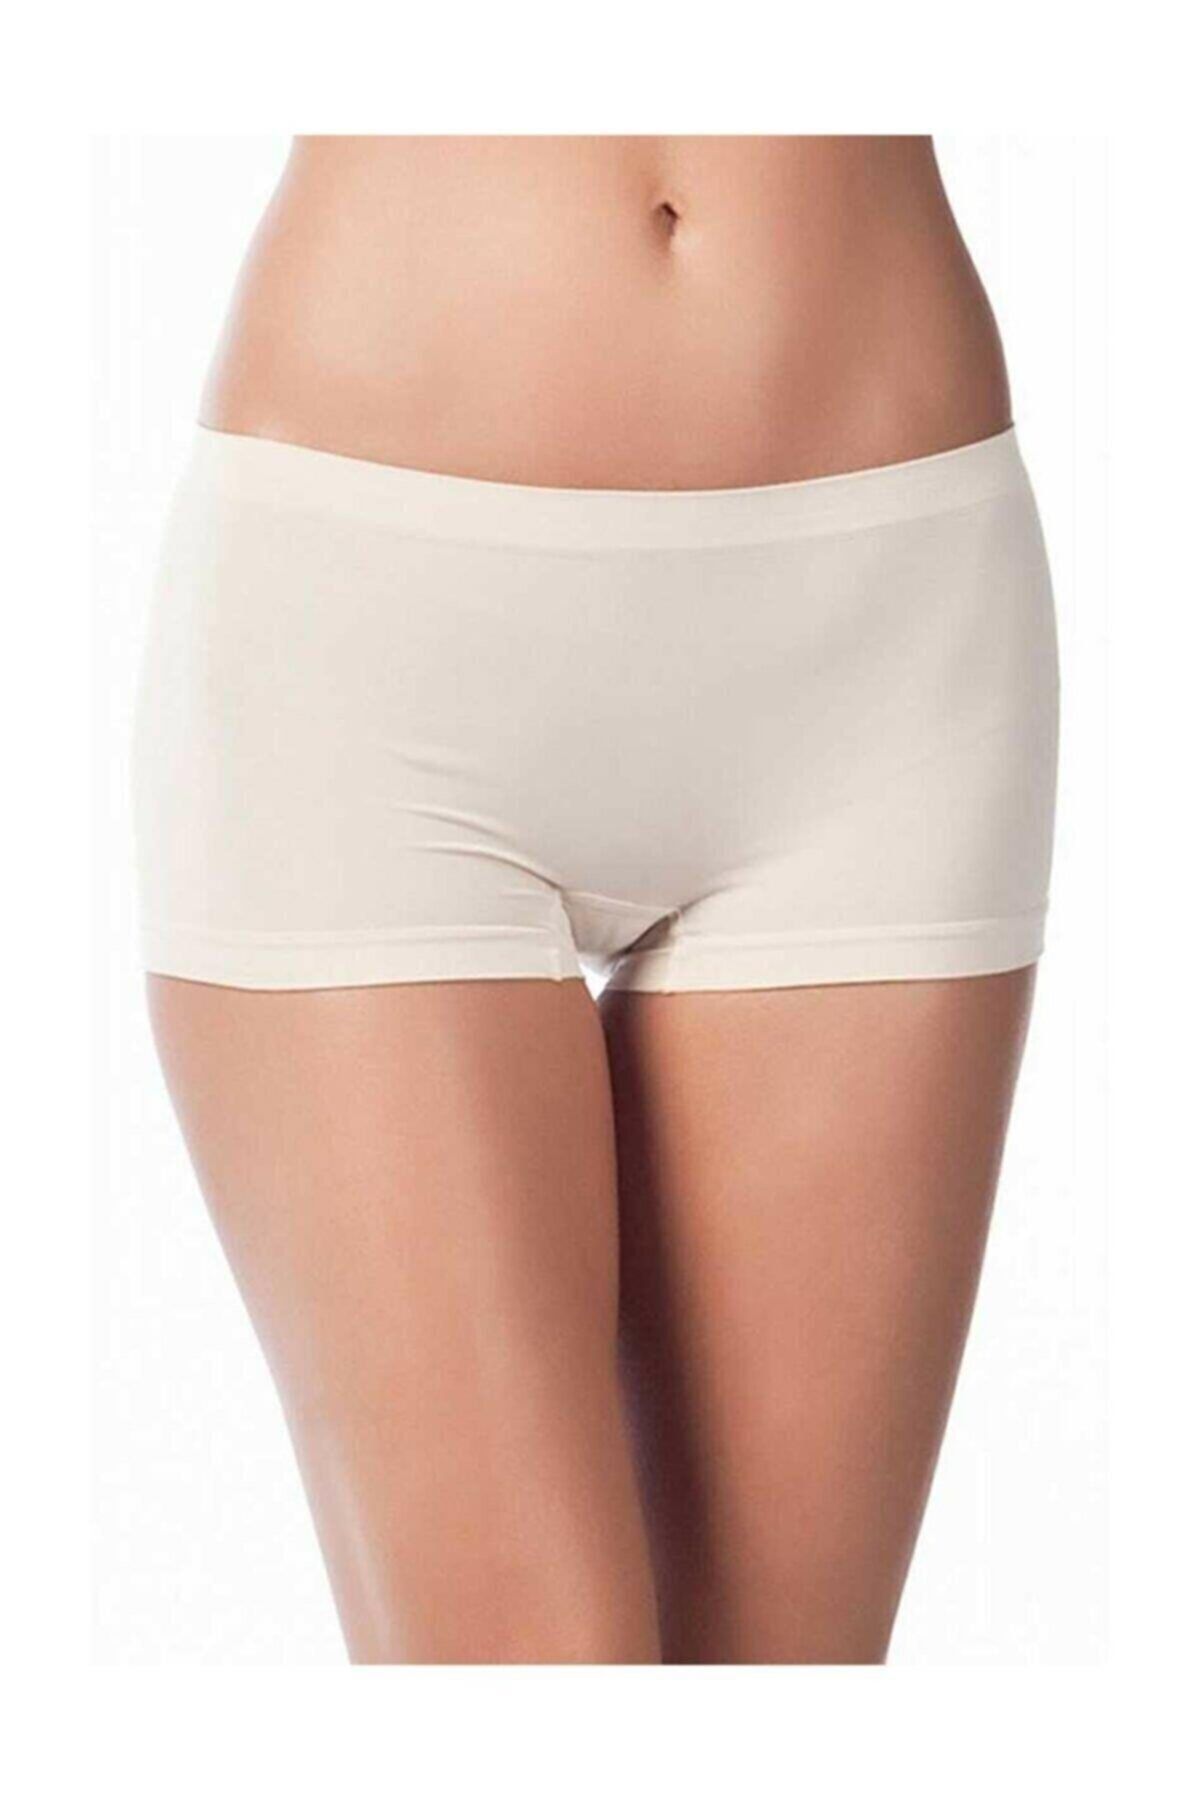 Etoile Miss Fit Kadın Dikişsiz Basic Boxer Örme Seamless Panty 1202